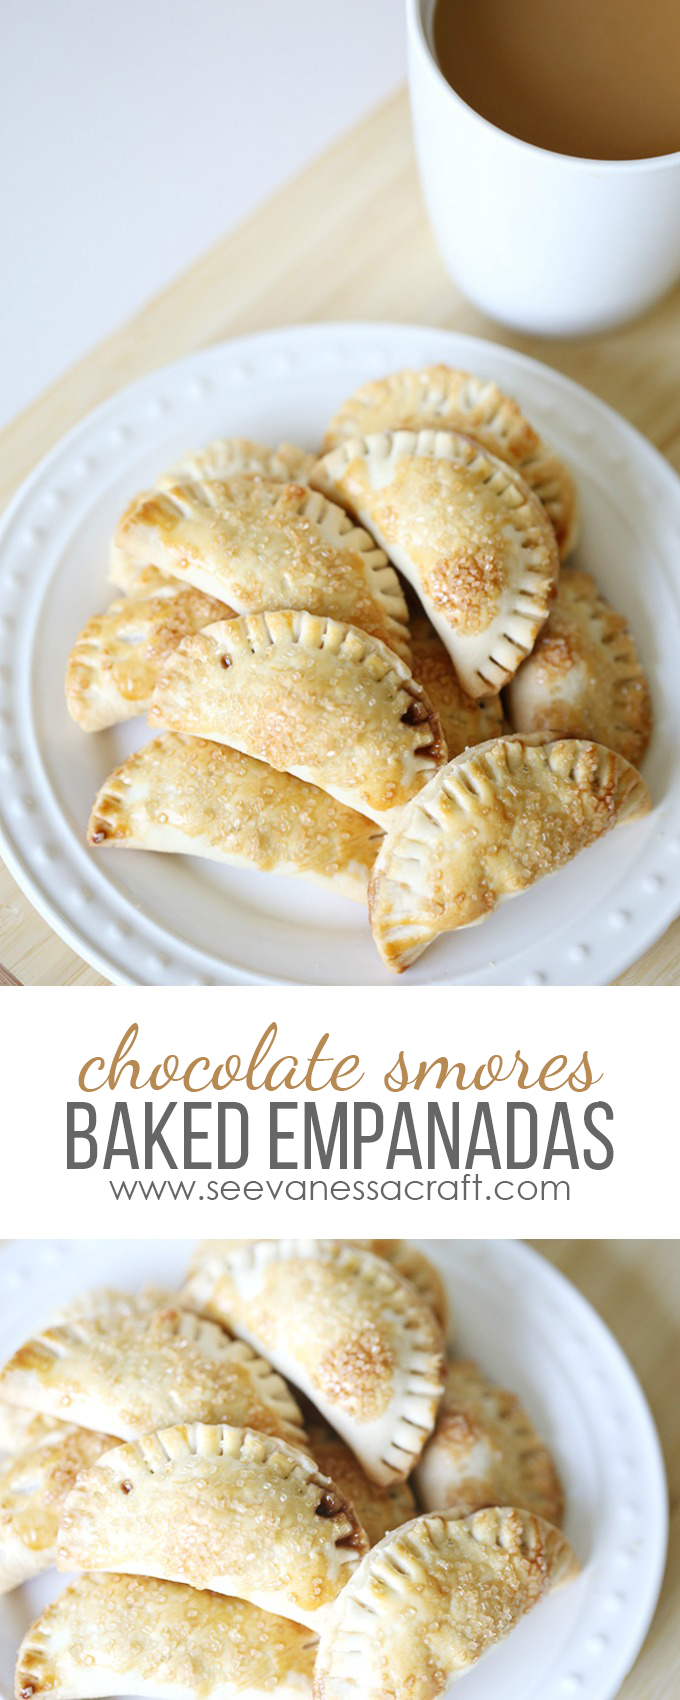 chocolate-smores-baked-empanada-recipe